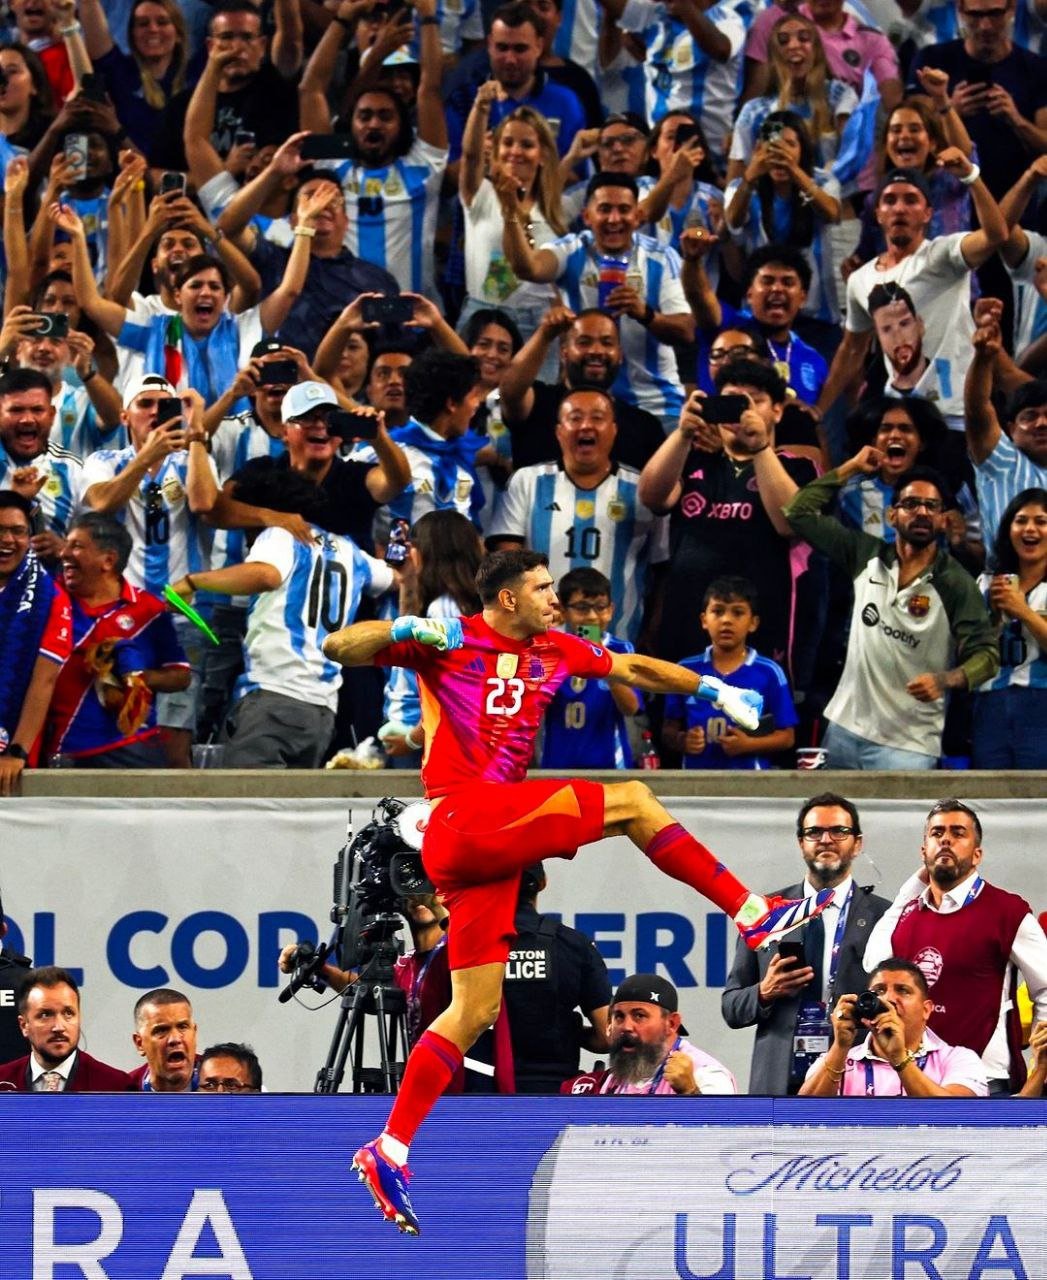 Вратарь Аргентины Эмилиано Мартинес - снова в центре внимания. Затащил серию 11-метровых в серии четвертьфинала Кубка Америки против Эквадора, сделав два сейва. Статистики подсчитали: он отразил уже 9 ударов с точки из 24, пока защищал ворота "албиселесте" , еще трое соперников промахнулись. Так что Аргентина - первый полуфиналист Копы, хотя Эквадор, как сообщают наши корресронденты , играл лучше.  К тому же первый пеналь в серии после 1:1 в основное время "запорол" Месси. Он ударил "паненкой", и мяч отразила перекладина. Где-то засмеялся Криштиану. Или заплакал...   Легко[в] о спорте